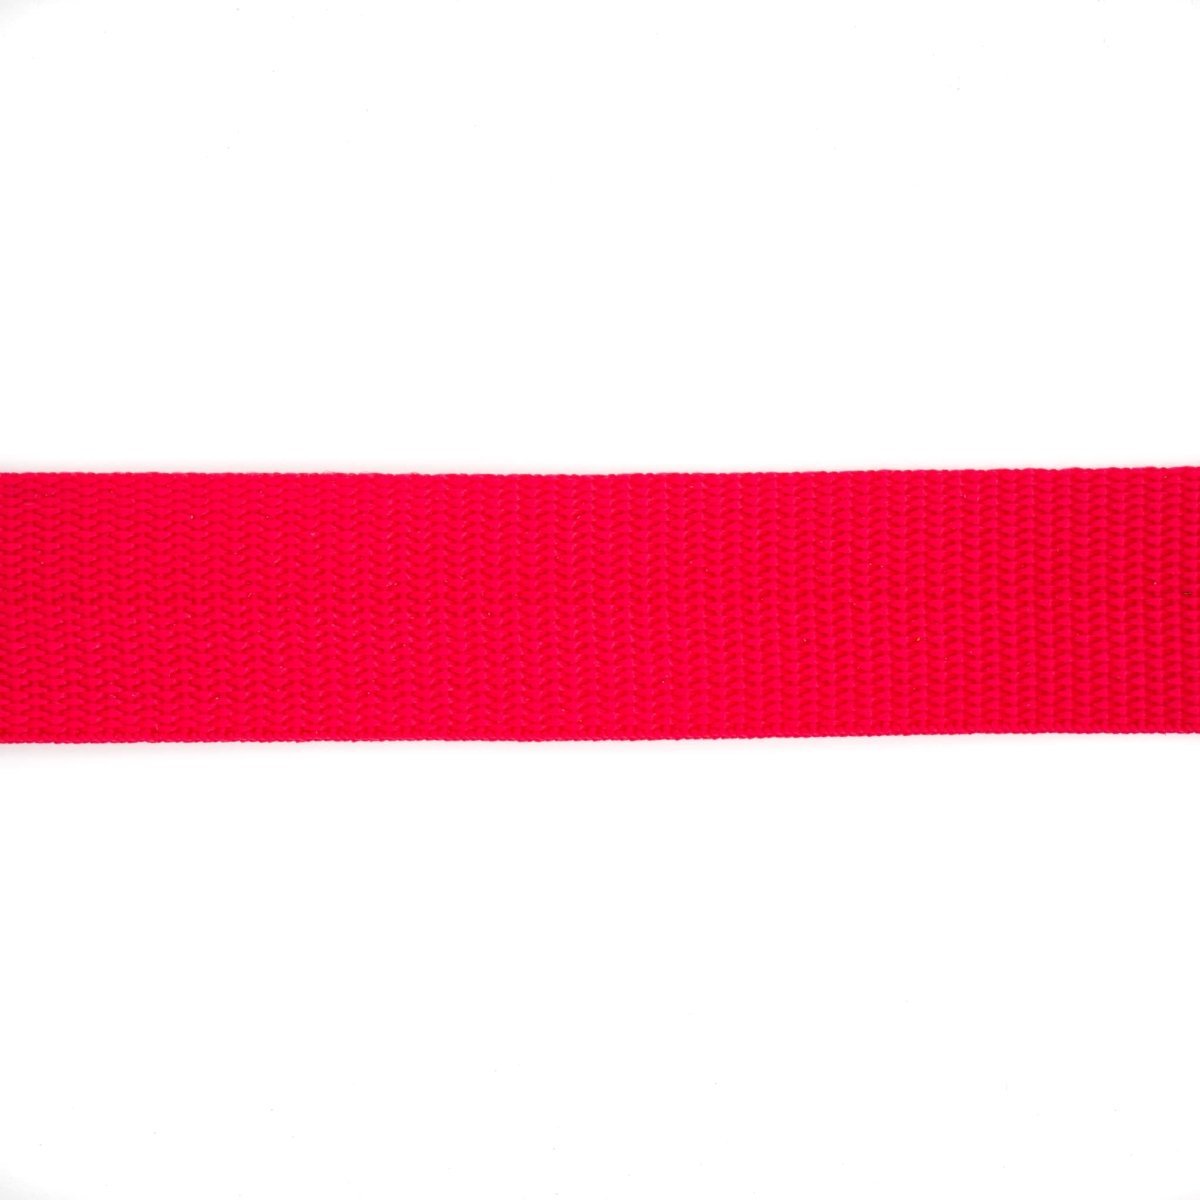 Tassenband | Nylon | 30 mm - rood Tassenband TASSENBAND-NYLON-30-ROOD